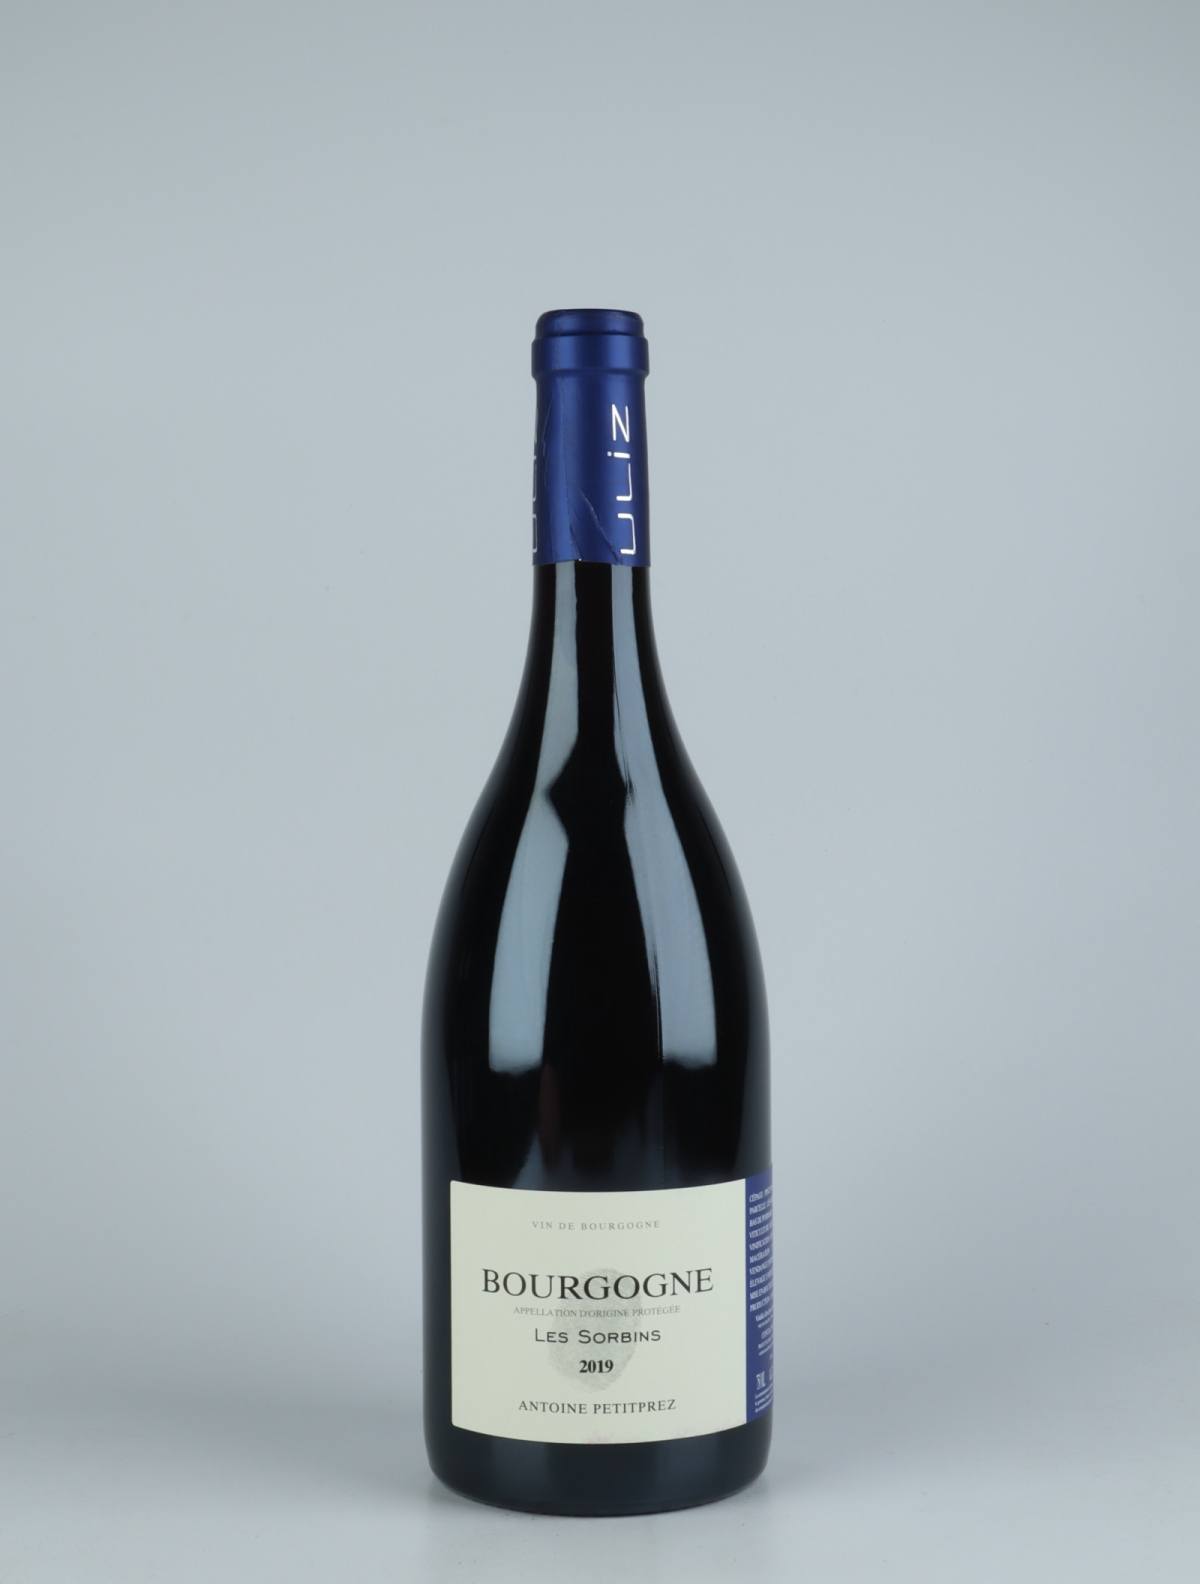 A bottle 2019 Bourgogne Rouge - Les Sorbins Red wine from Antoine Petitprez, Burgundy in France